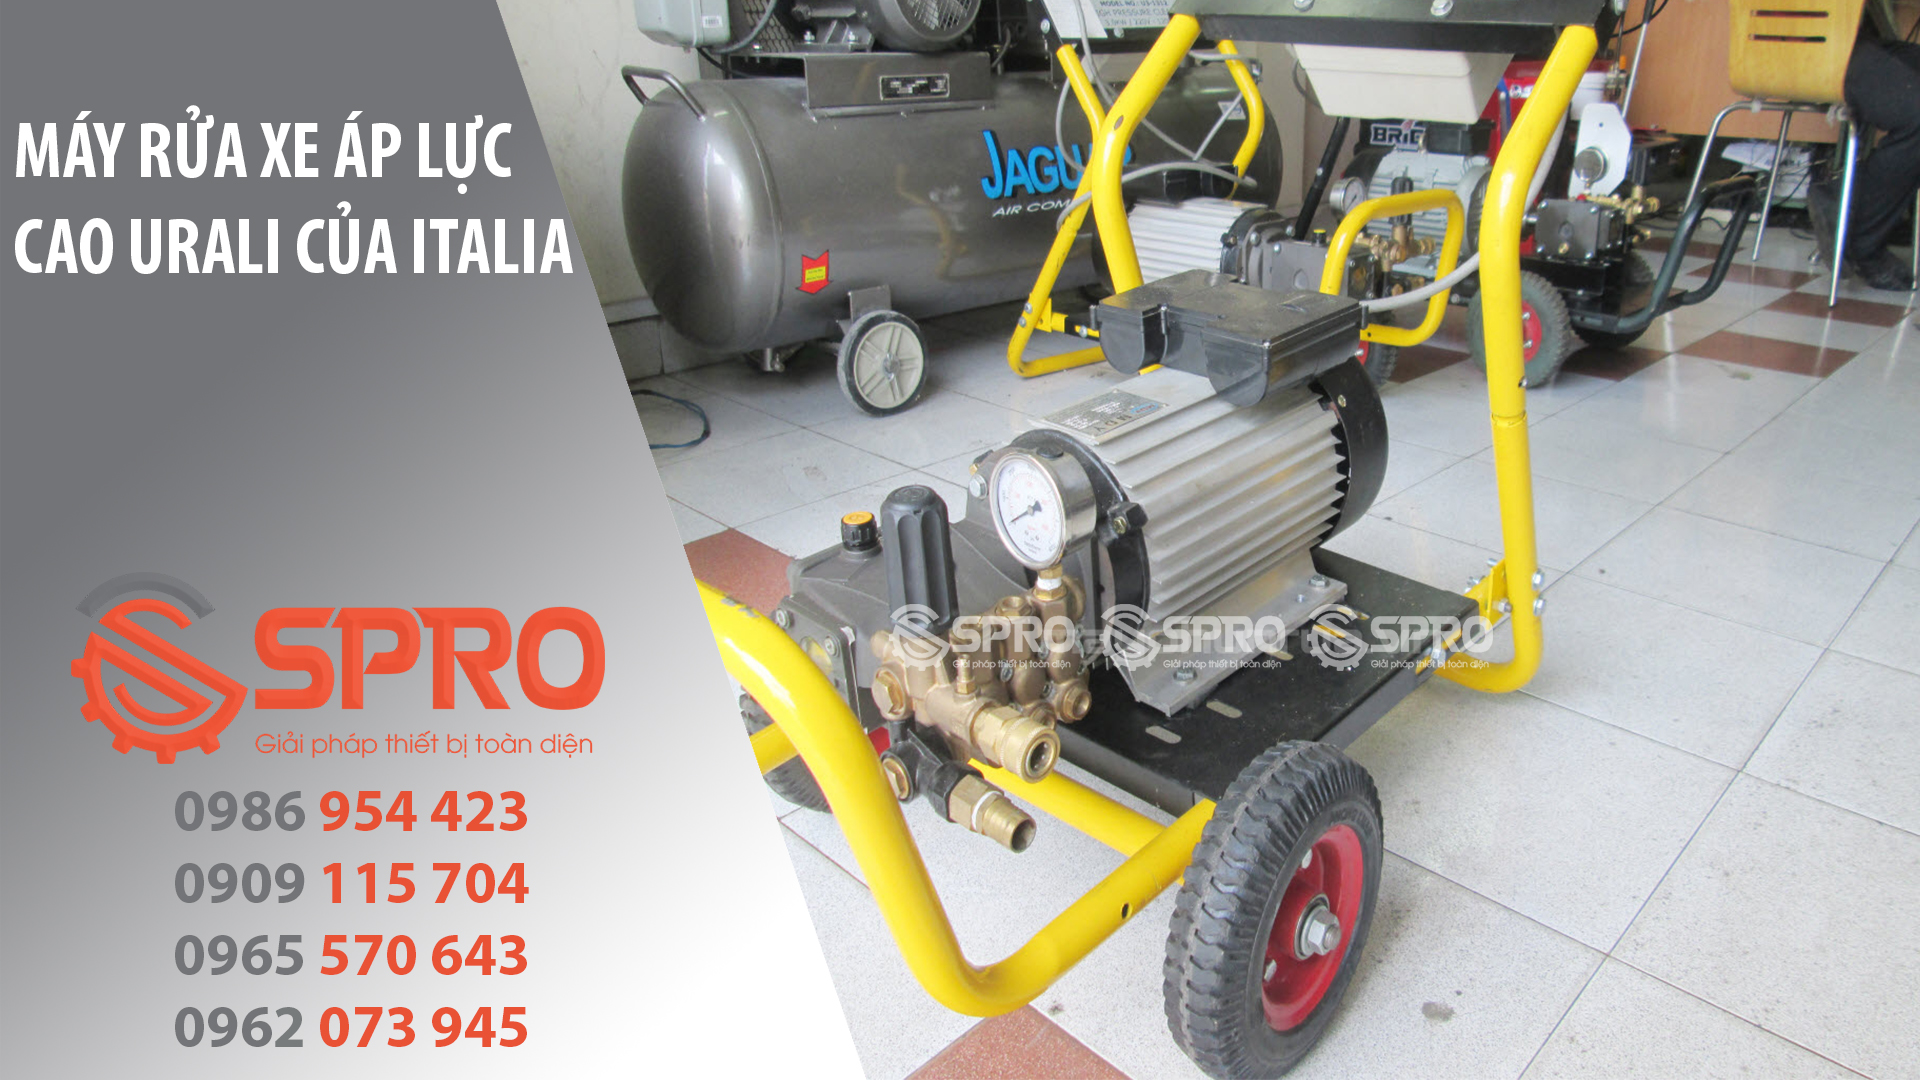 Máy rửa xe áp lực cao Urali nhập khẩu chính hãng từ Italia